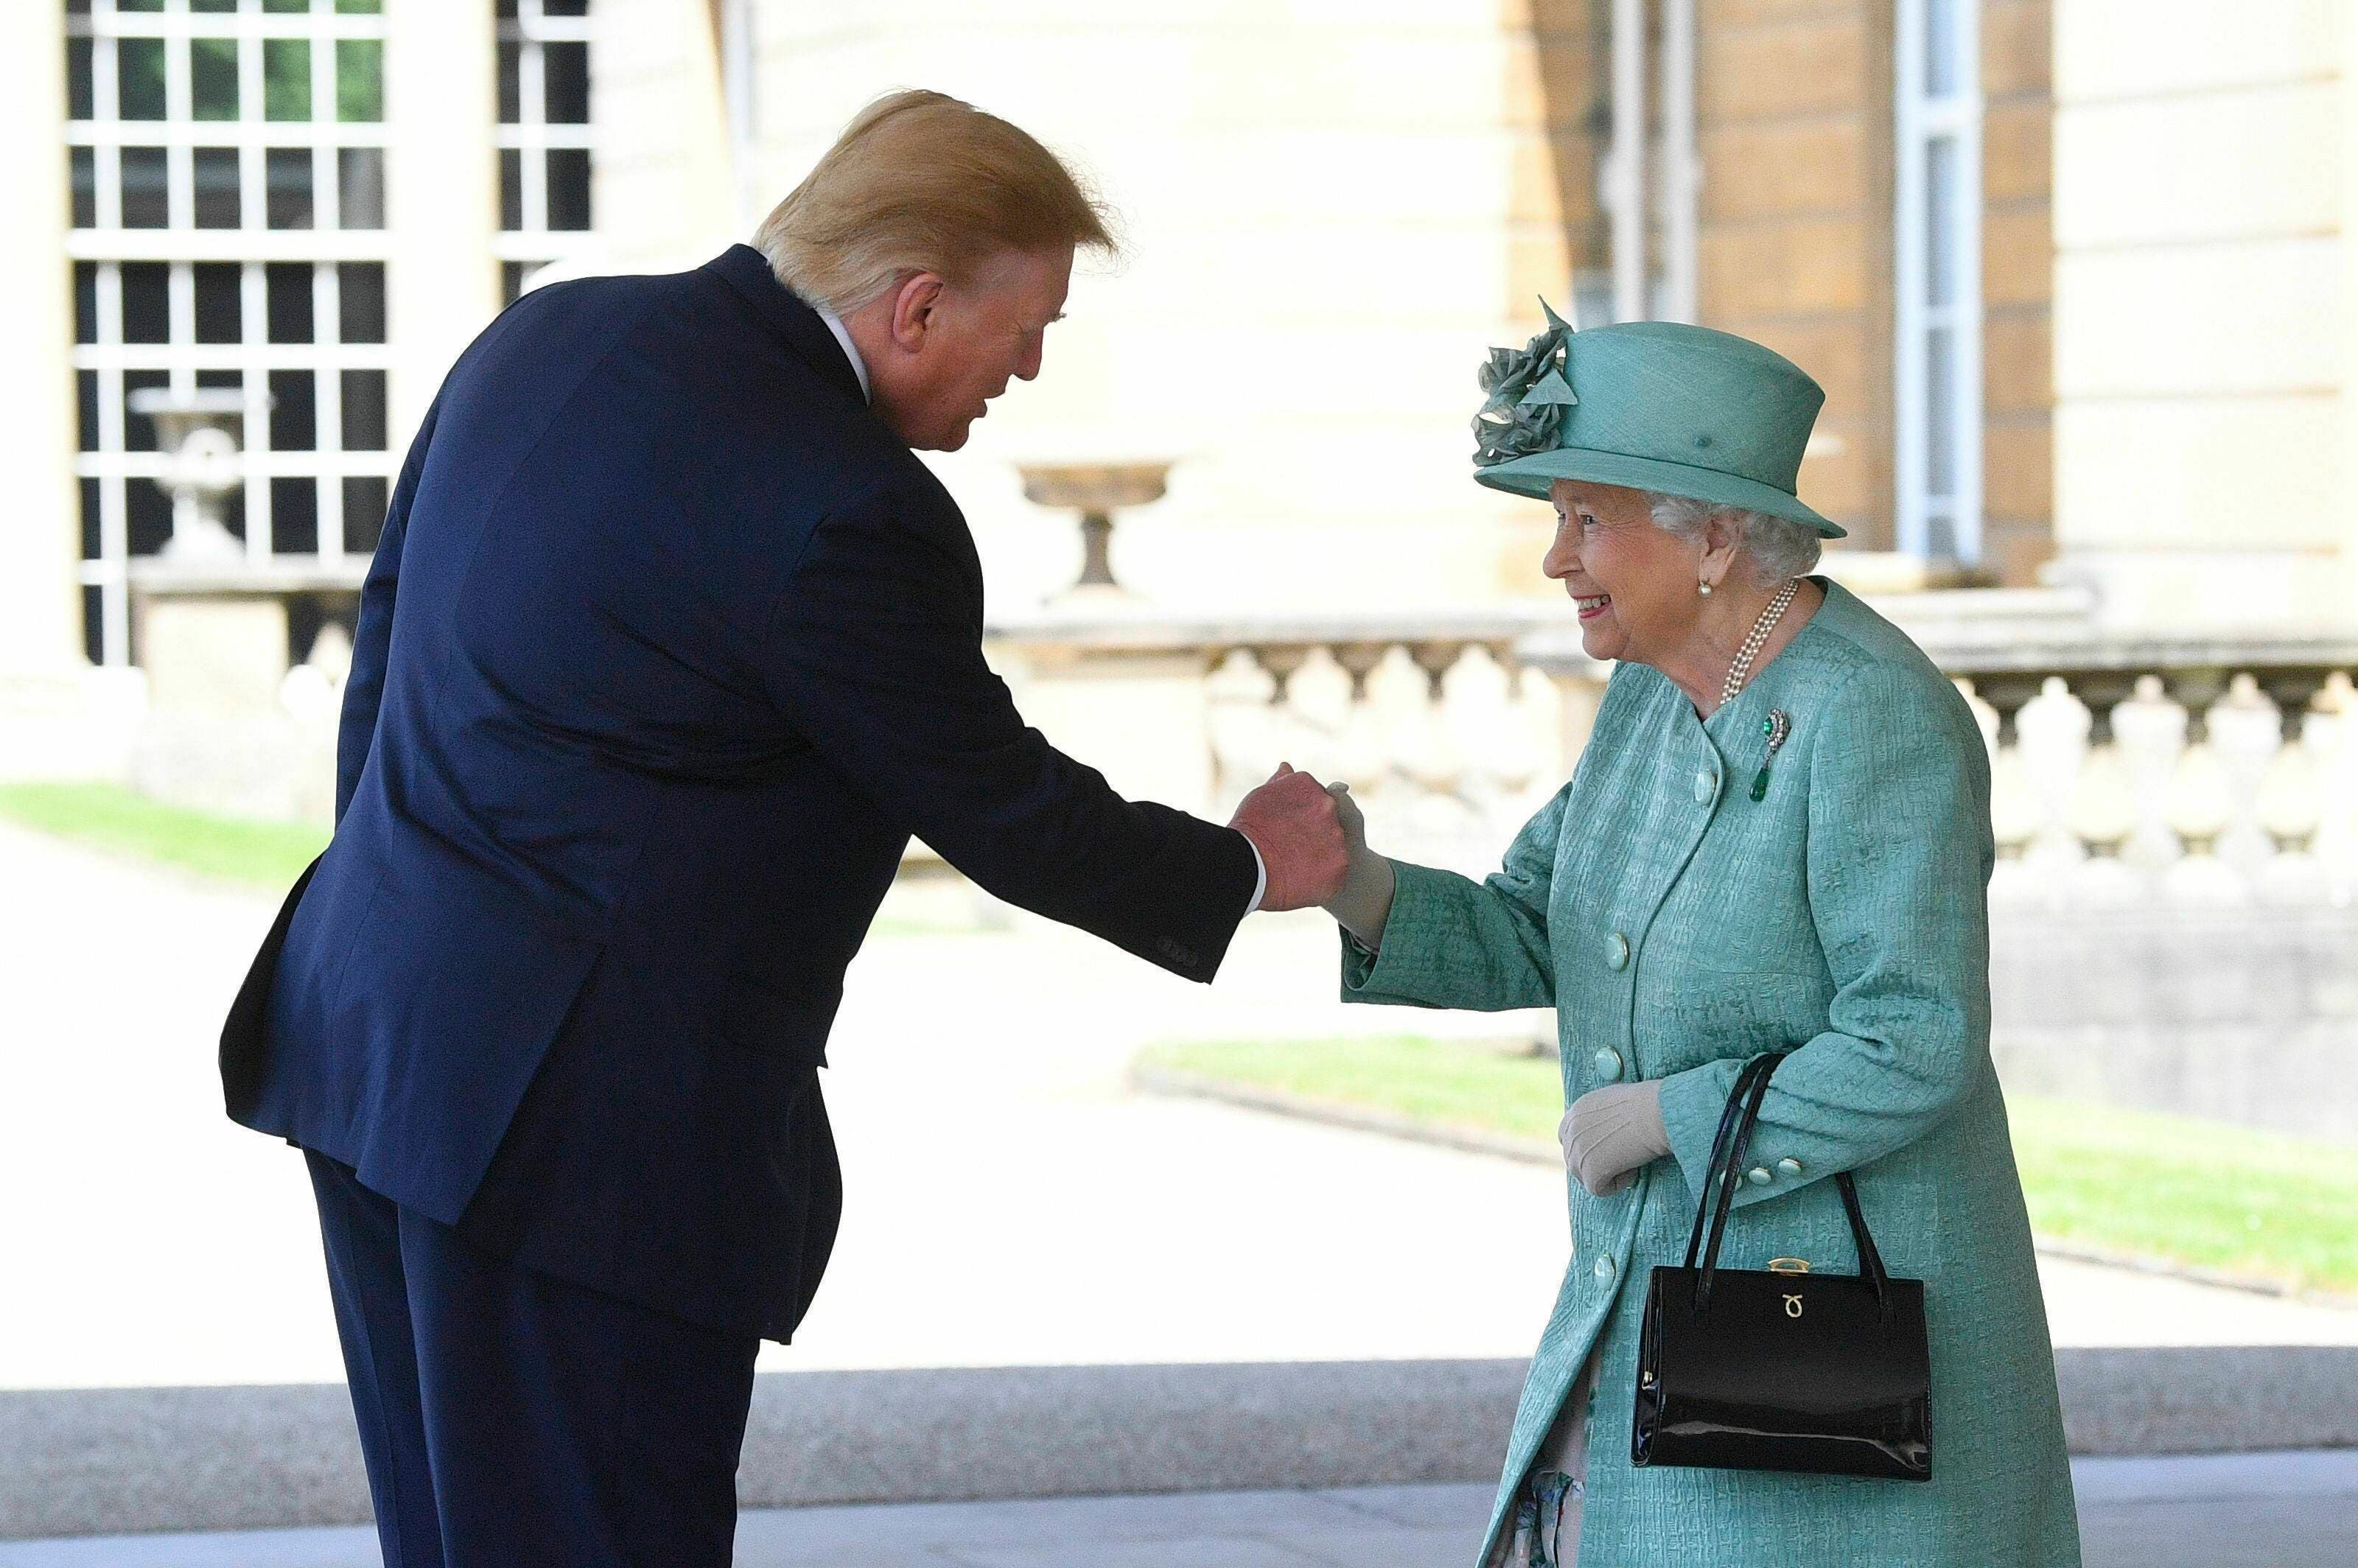 Vea en fotos el encuentro de la reina Isabel II con el presidente Donald Trump